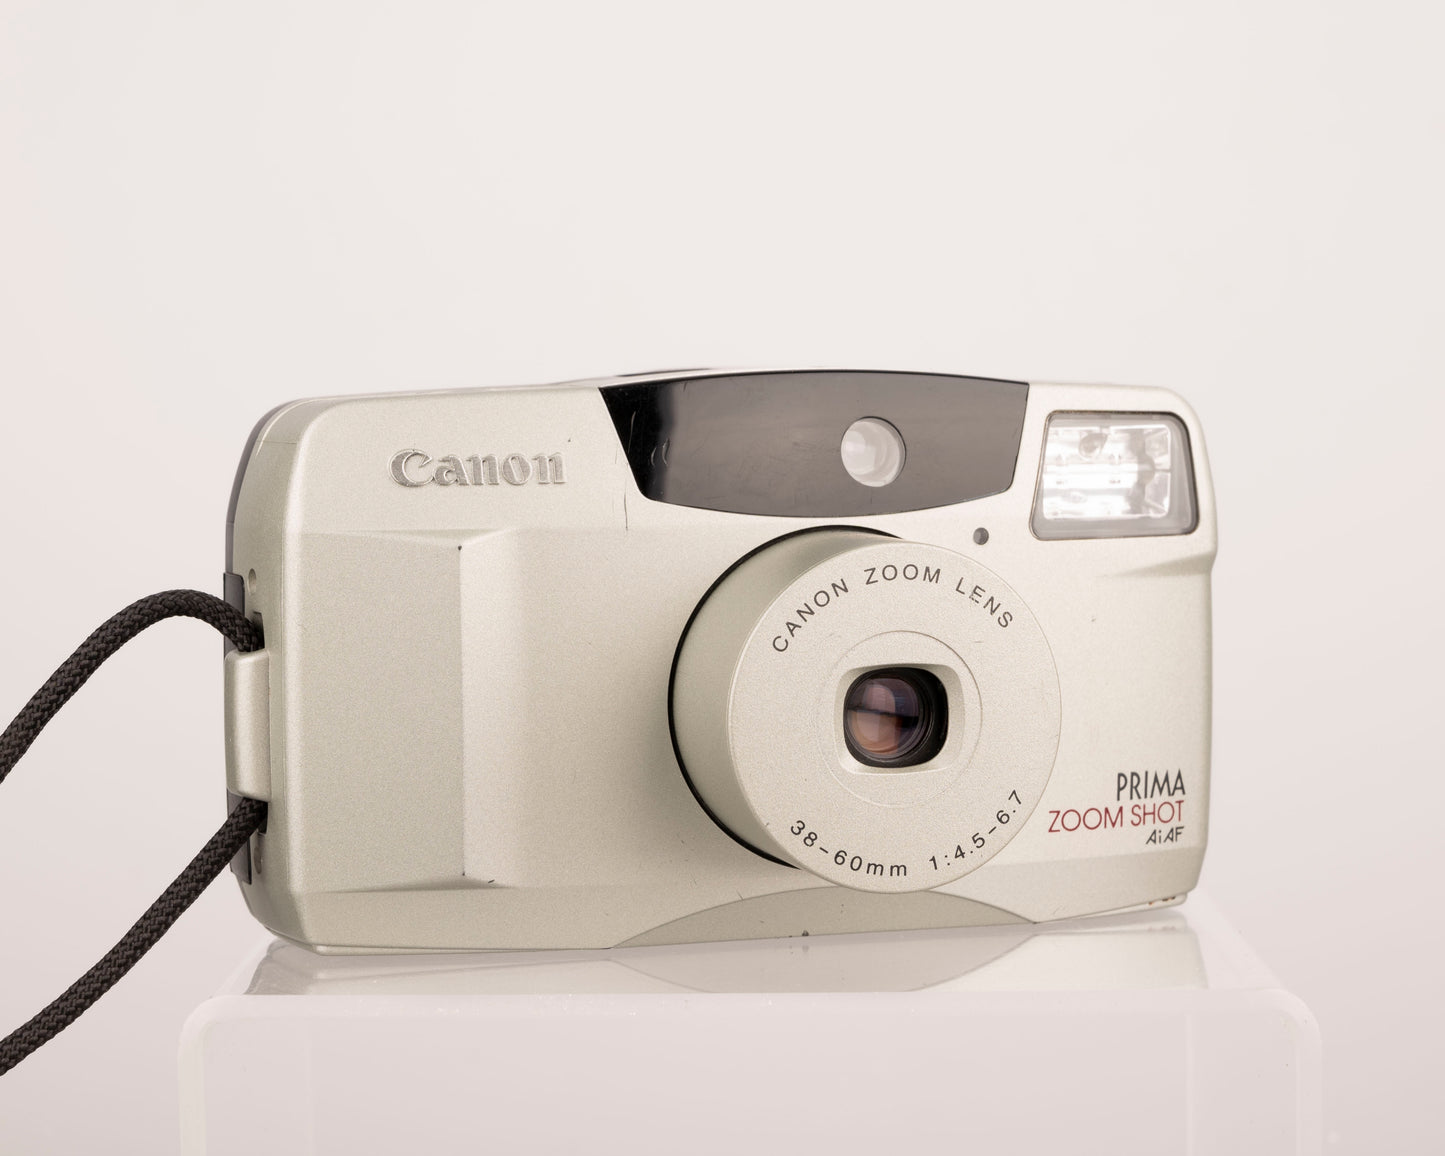 Appareil photo Canon Prima Zoom Shot 35 mm avec étui (série 3626453)